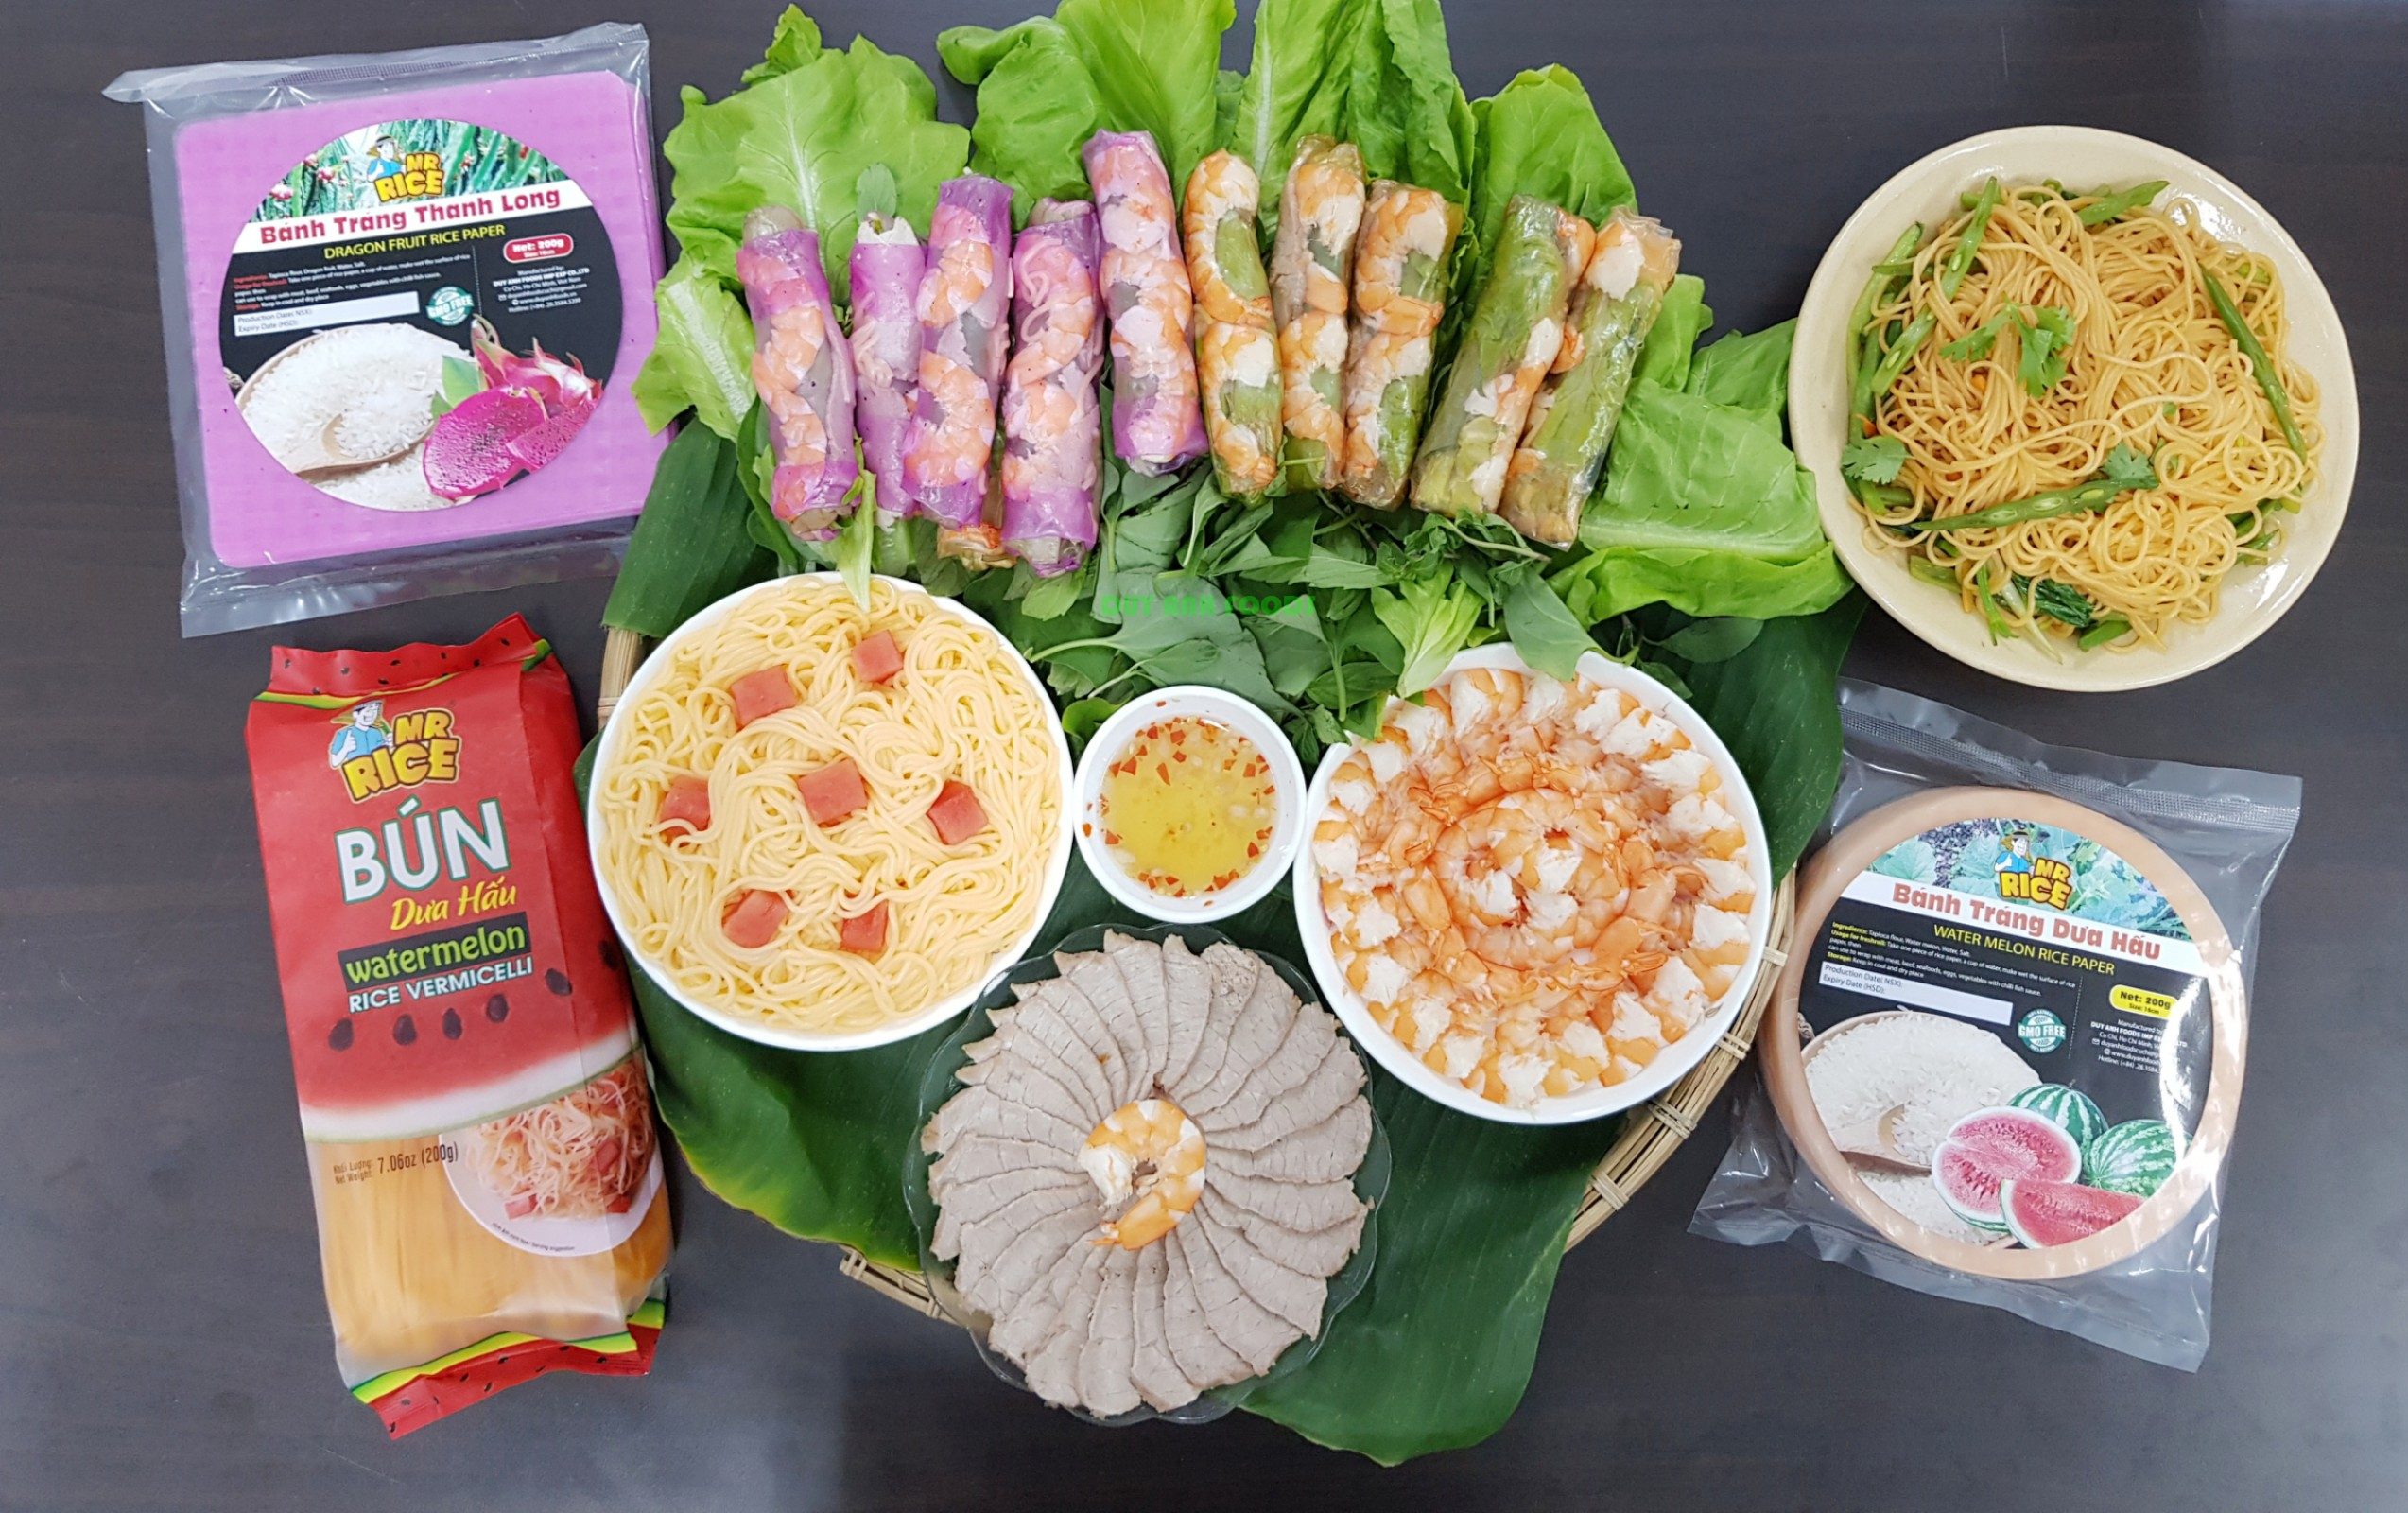 Bún Dưa Hấu, Bánh Tráng Thanh Long: Hướng Đi Mới Cho Nông Sản Việt